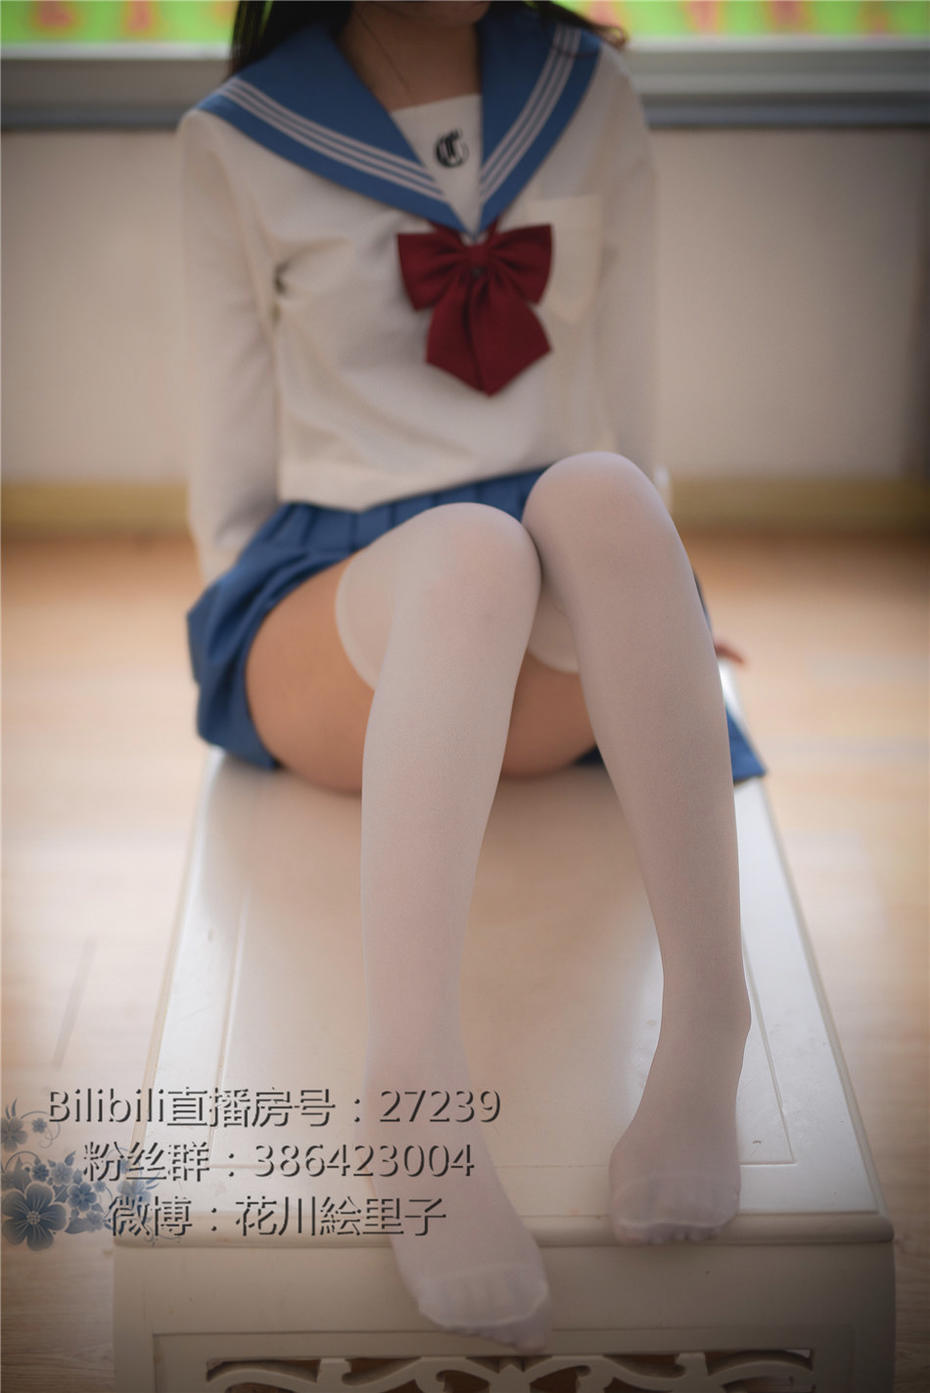 学生妹妹花川絵里子JK制服写真照片 网红coser第190期第1张